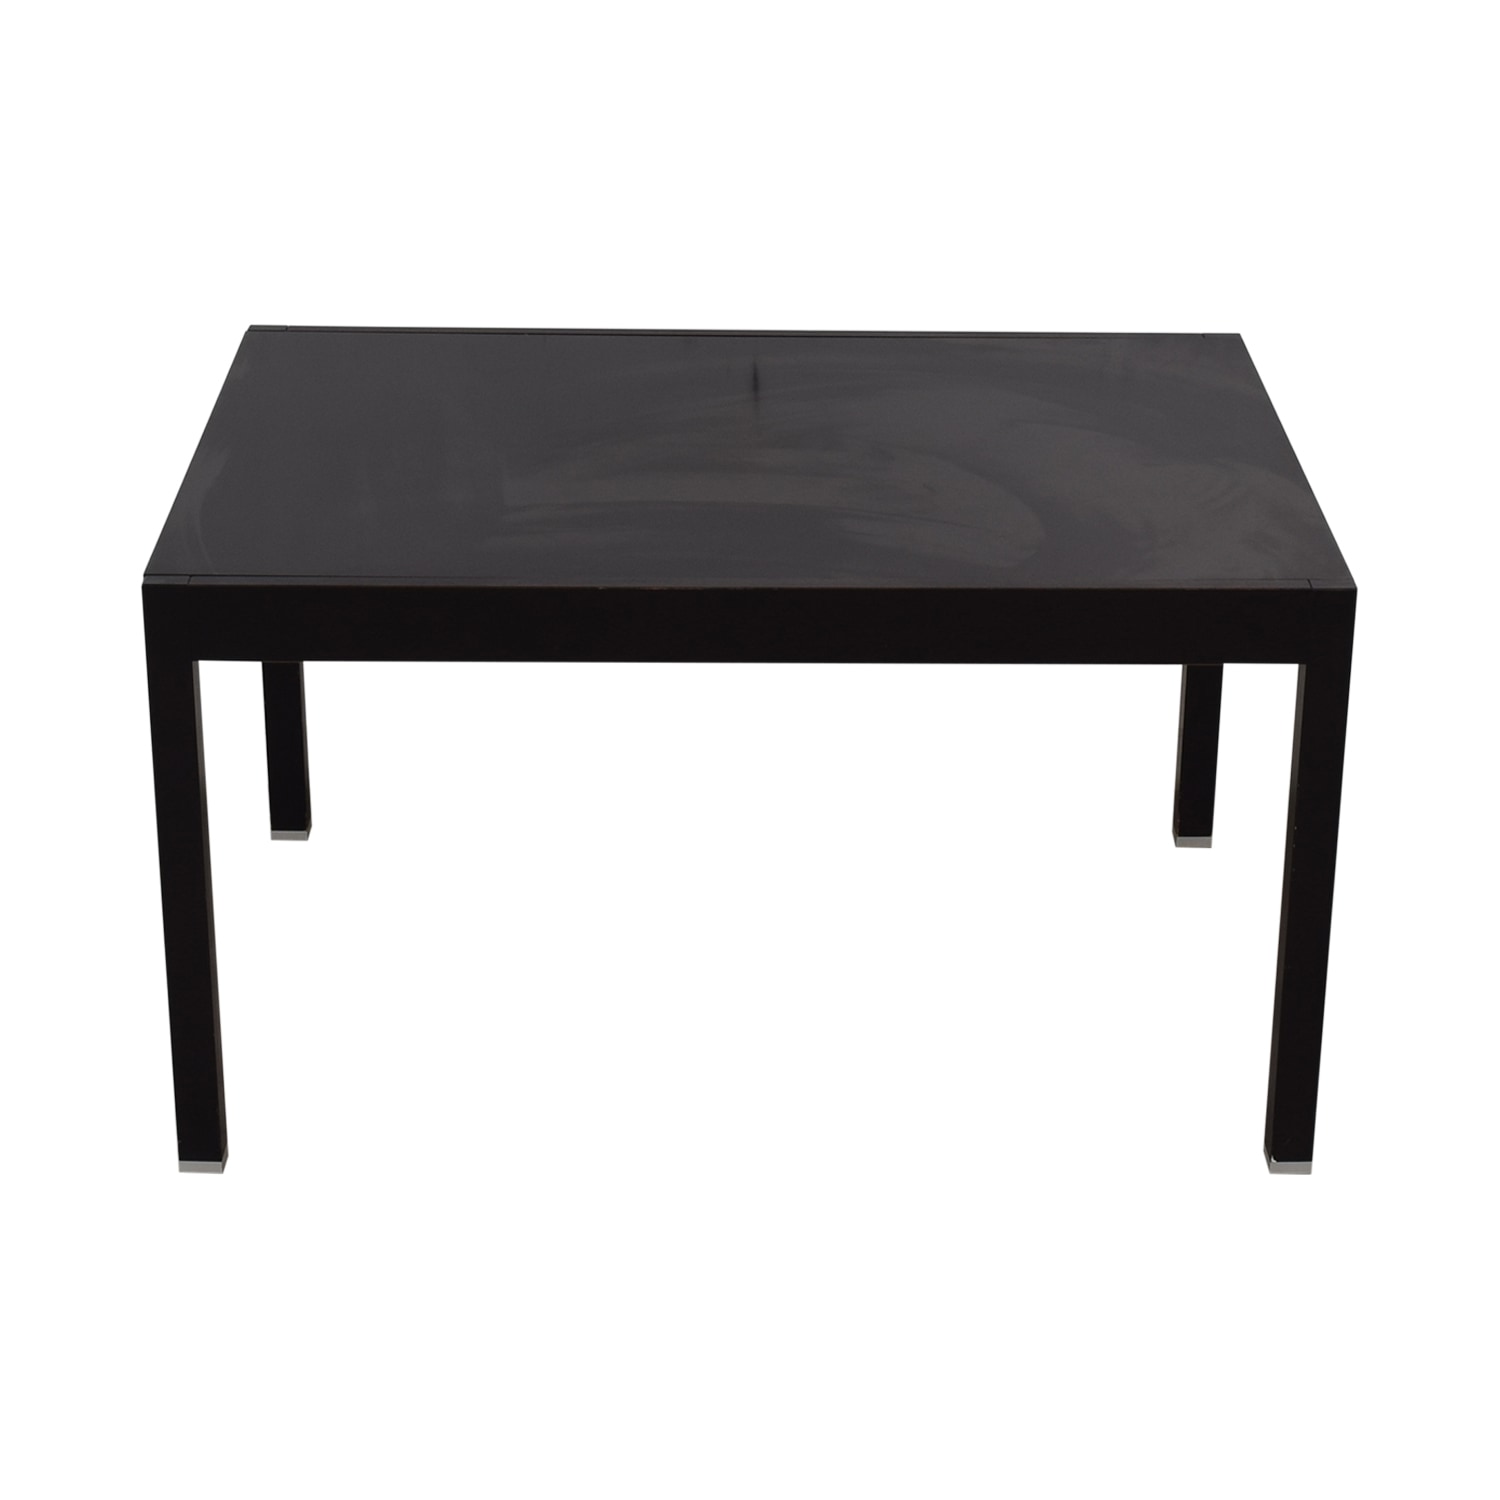 Bombelli Modern Extendable Dining Table Black - Threshold™ : Target